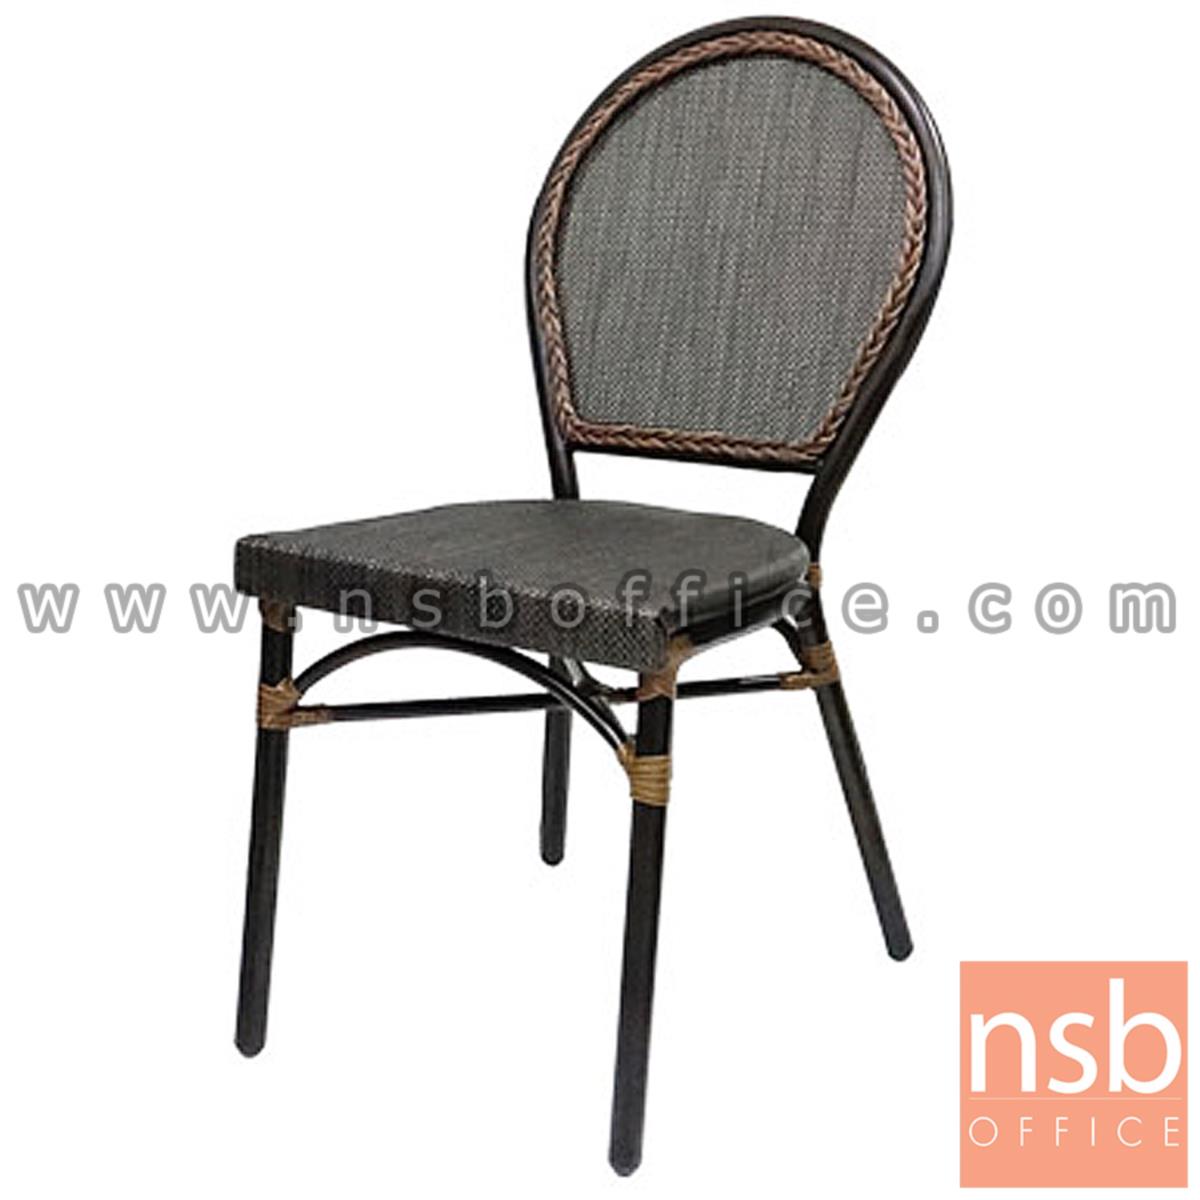 G08A242:เก้าอี้สนามหวายเทียมสาน โครงเหล็ก รุ่น Hypnotic ไม่มีท้าวแขน ผลิตสีน้ำตาล   